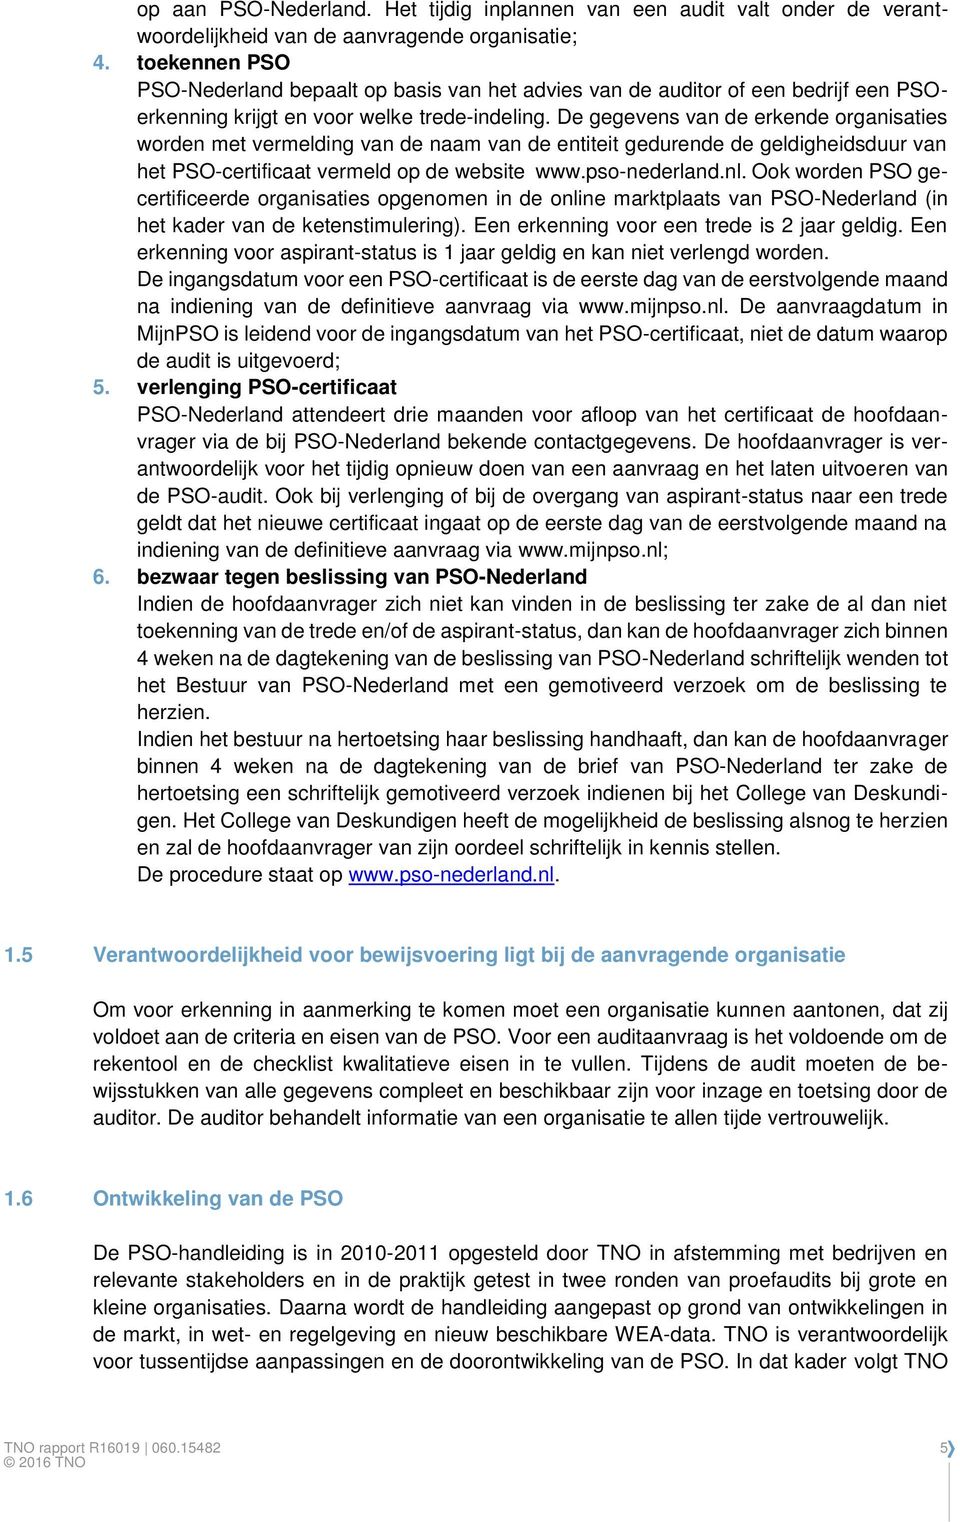 De gegevens van de erkende organisaties worden met vermelding van de naam van de entiteit gedurende de geldigheidsduur van het PSO-certificaat vermeld op de website www.pso-nederland.nl.